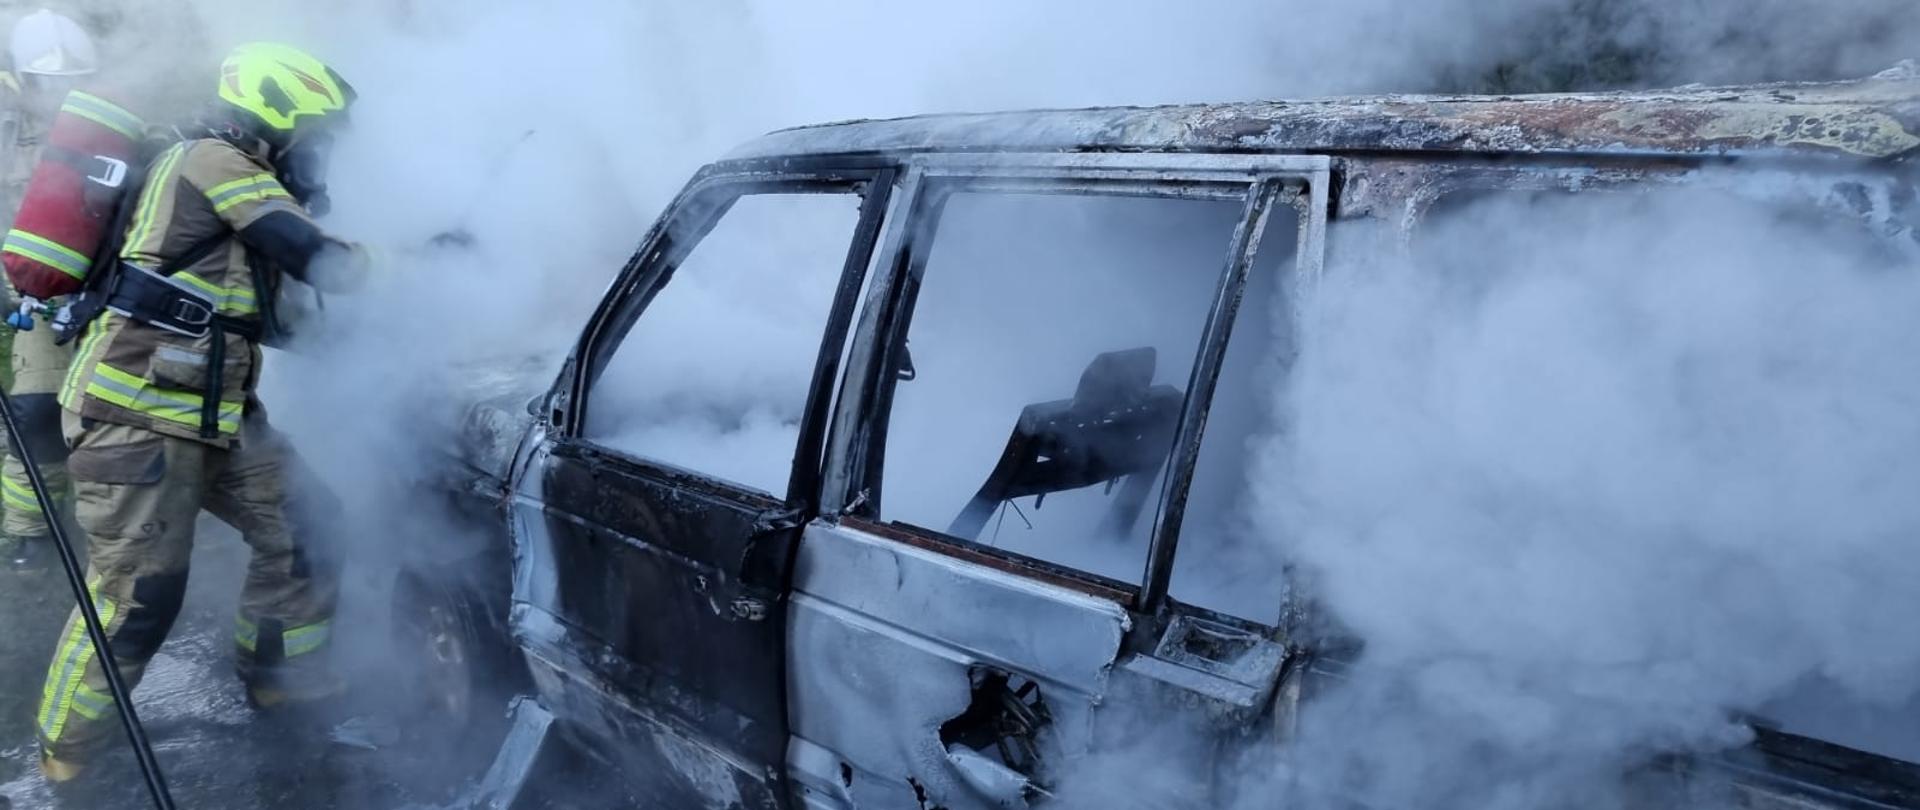 Wrak samochodu, z którego unoszą się kłęby dymu oraz pary wodnej. Obok strażak gasi samochód.